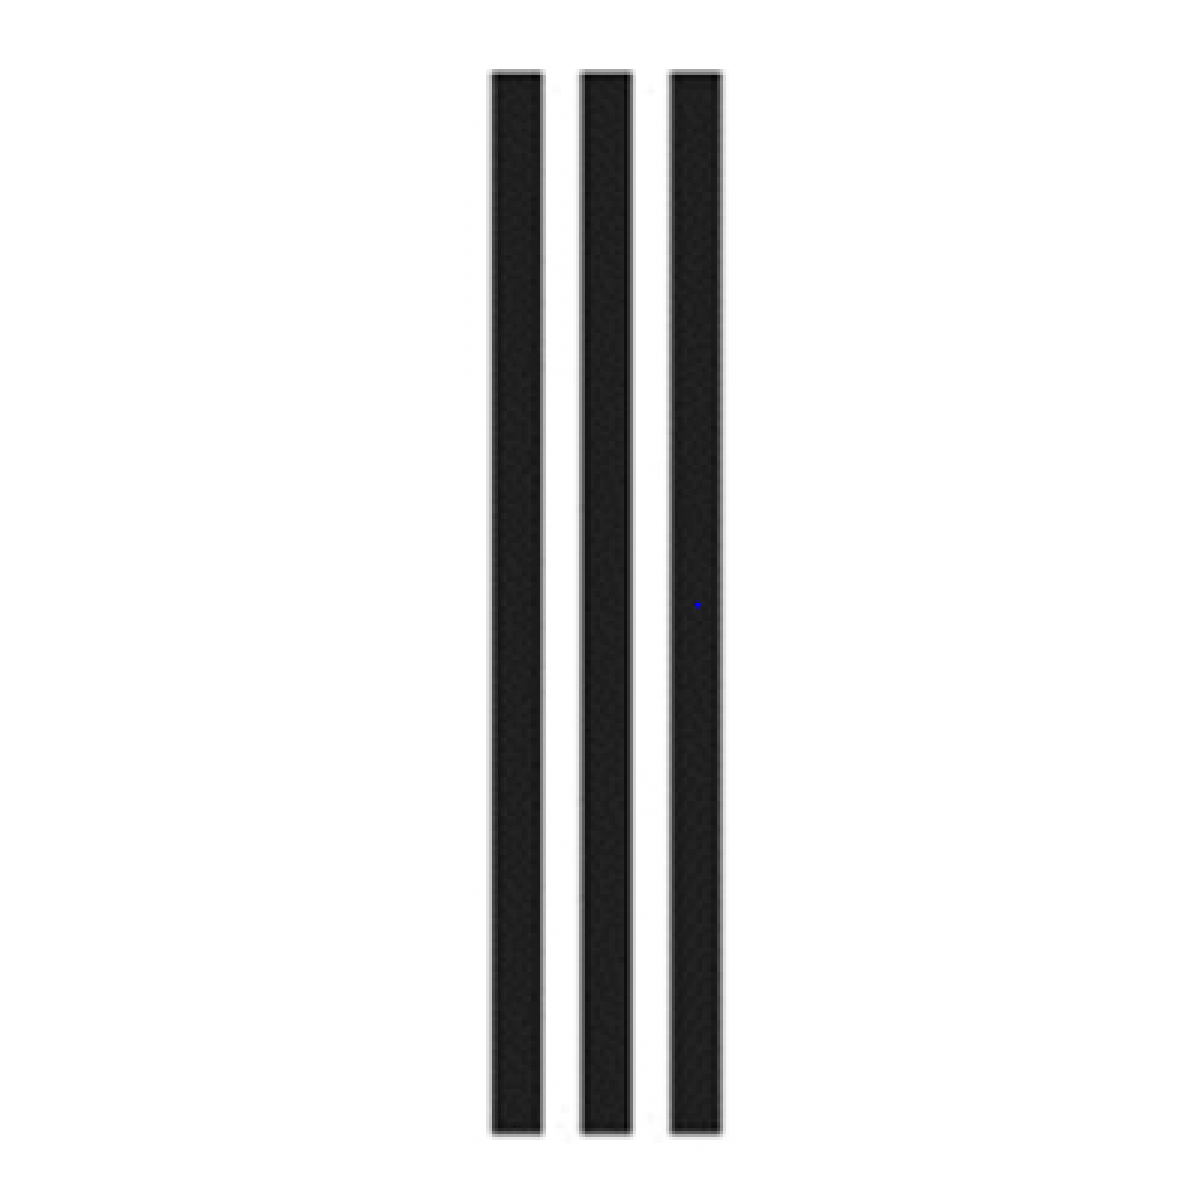 adidas three stripes